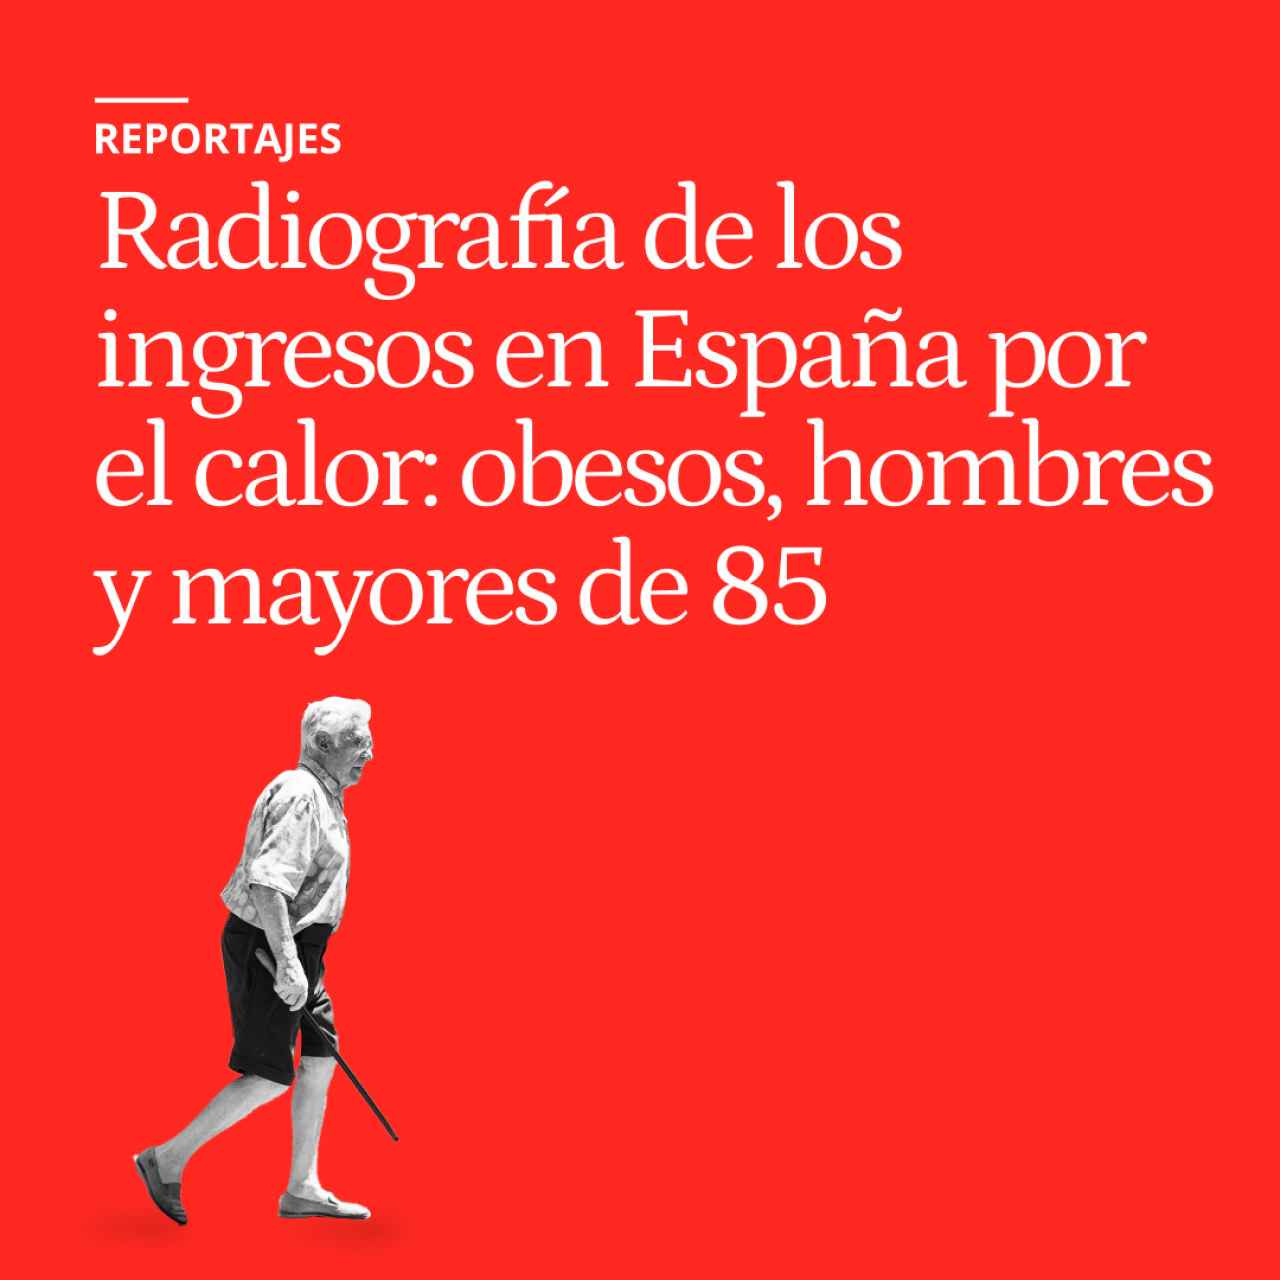 Radiografía de los ingresos hospitalarios en España por el calor: obesos, hombres y mayores de 85